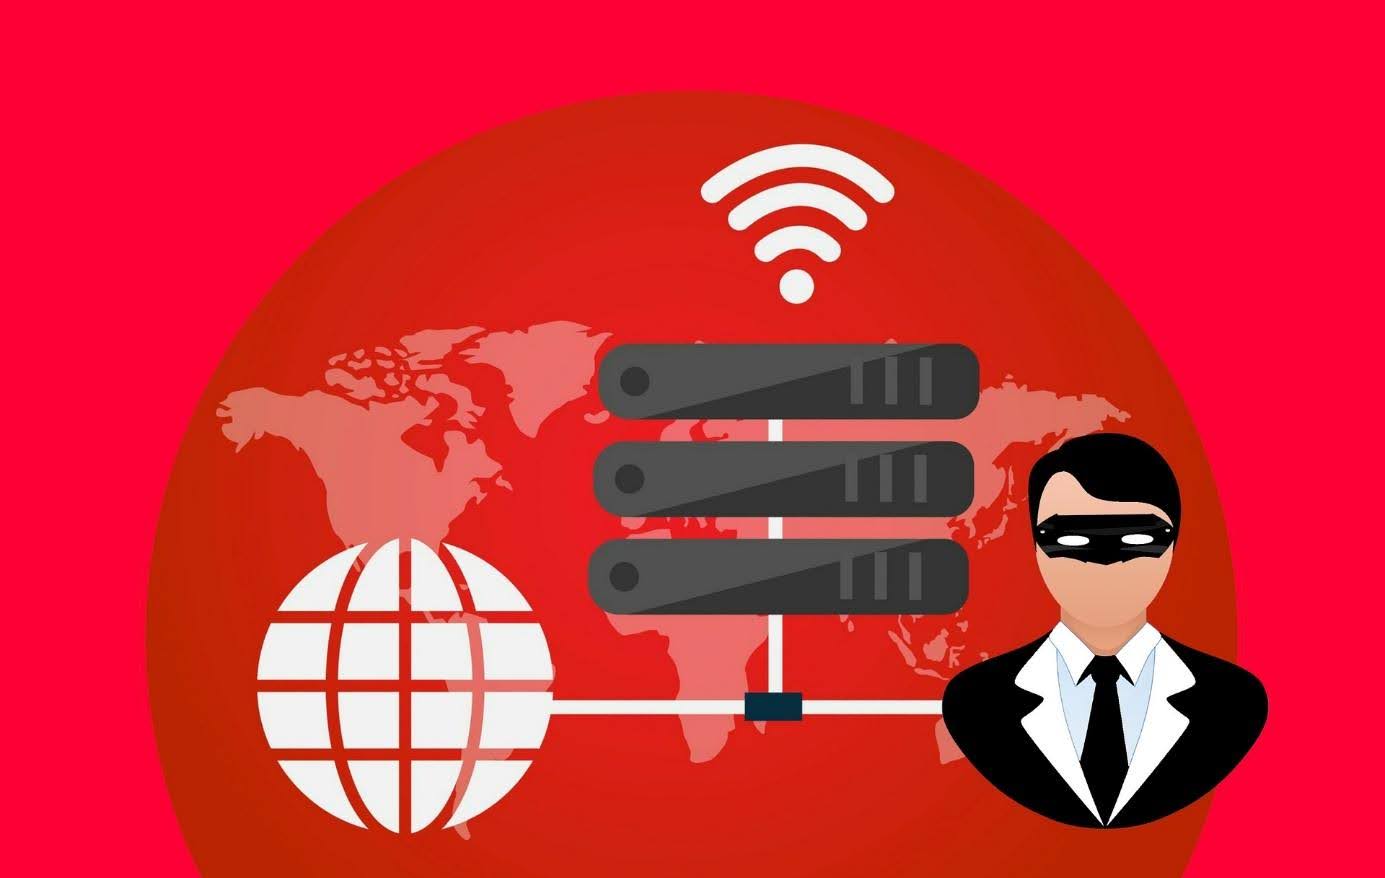 Co to jest VPN i do czego służy?